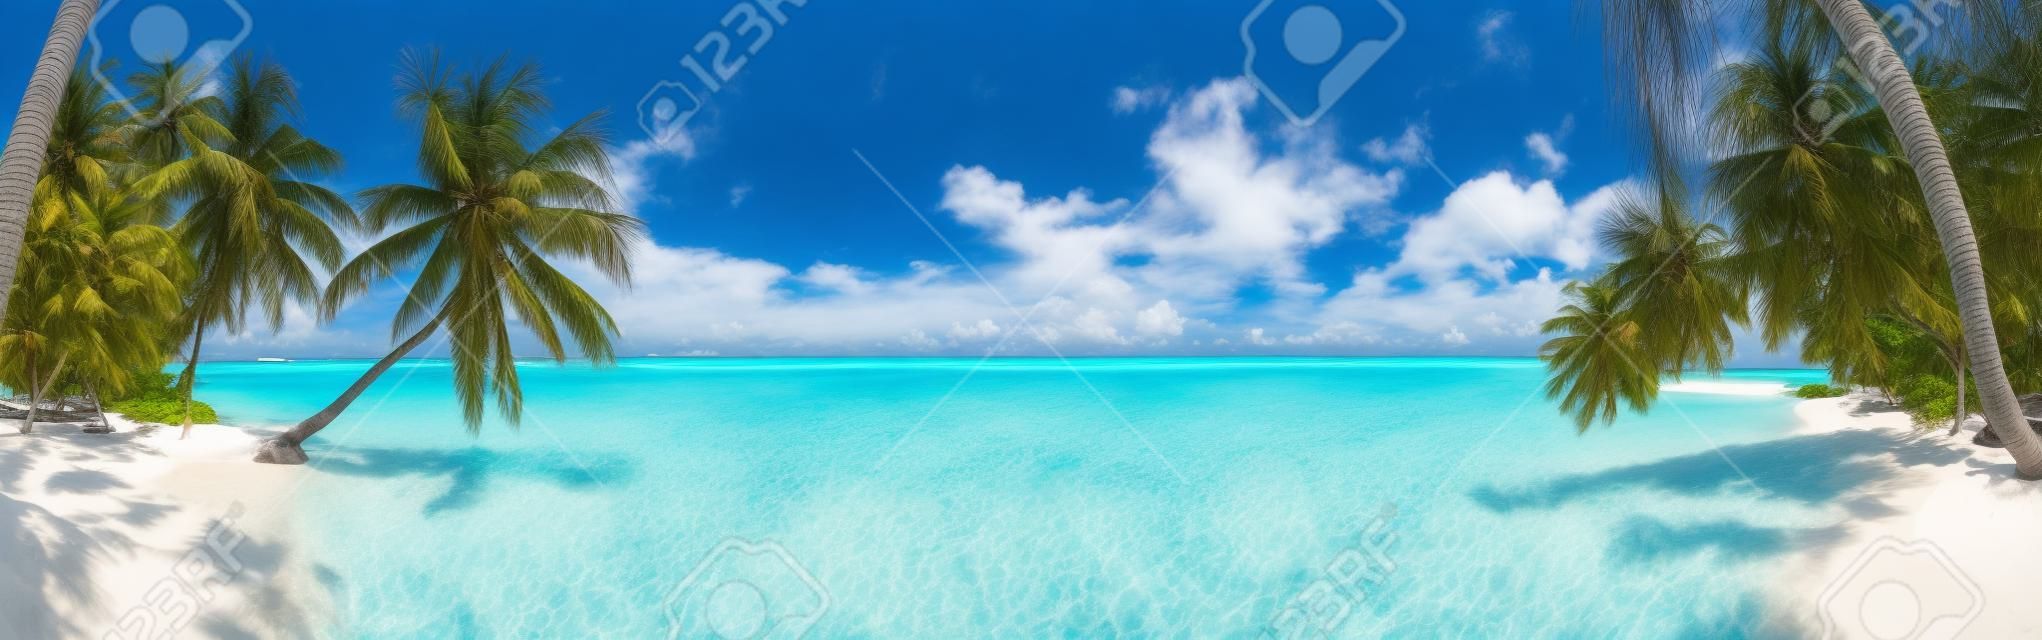 Beach panorama na Malediwach z błękitne niebo, palmy i turkusowe wody